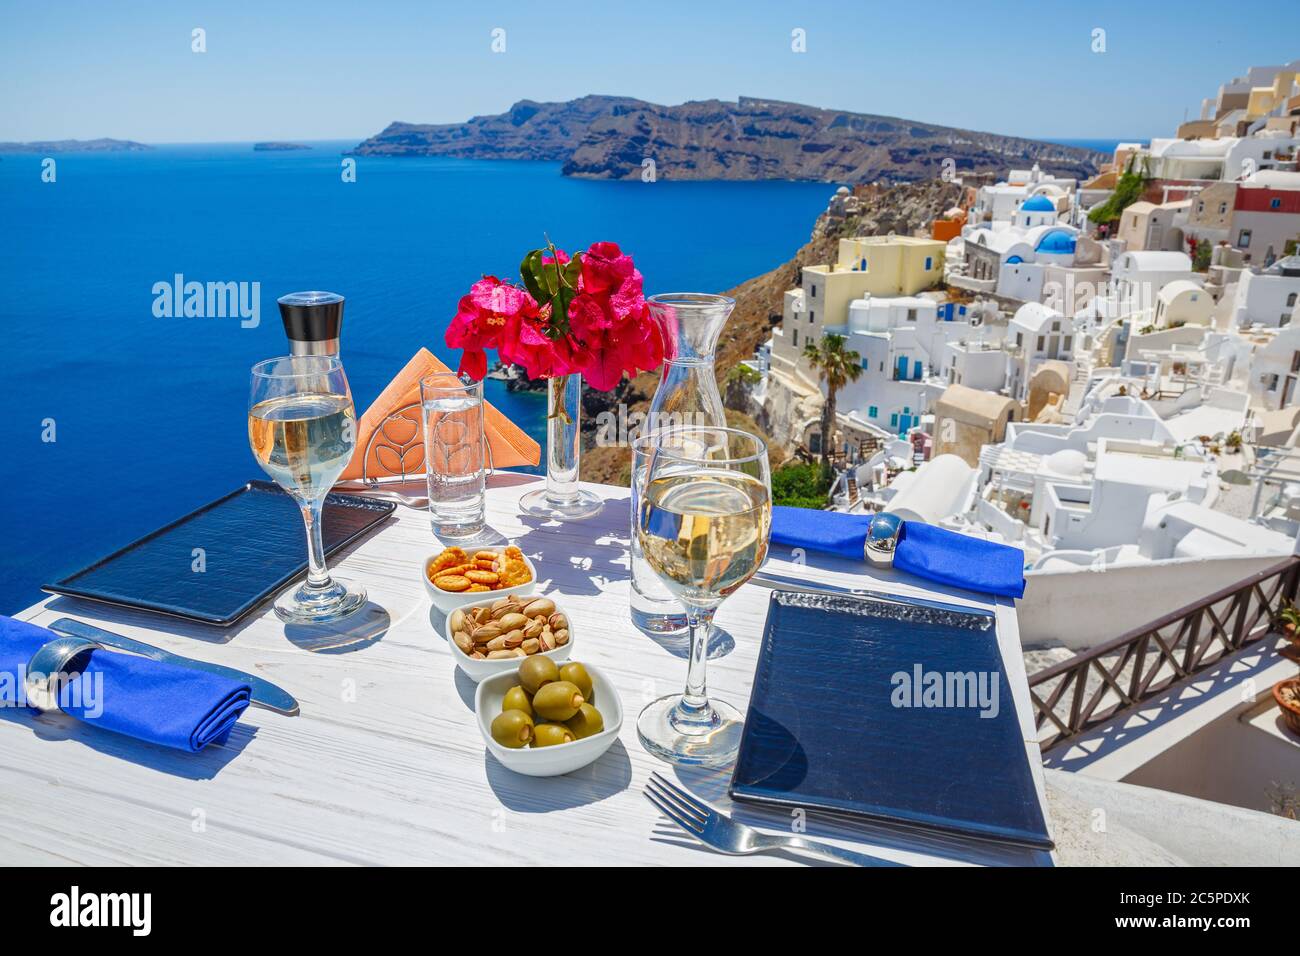 Vin et en-cas sur la table avec vue sur la mer grecque Banque D'Images